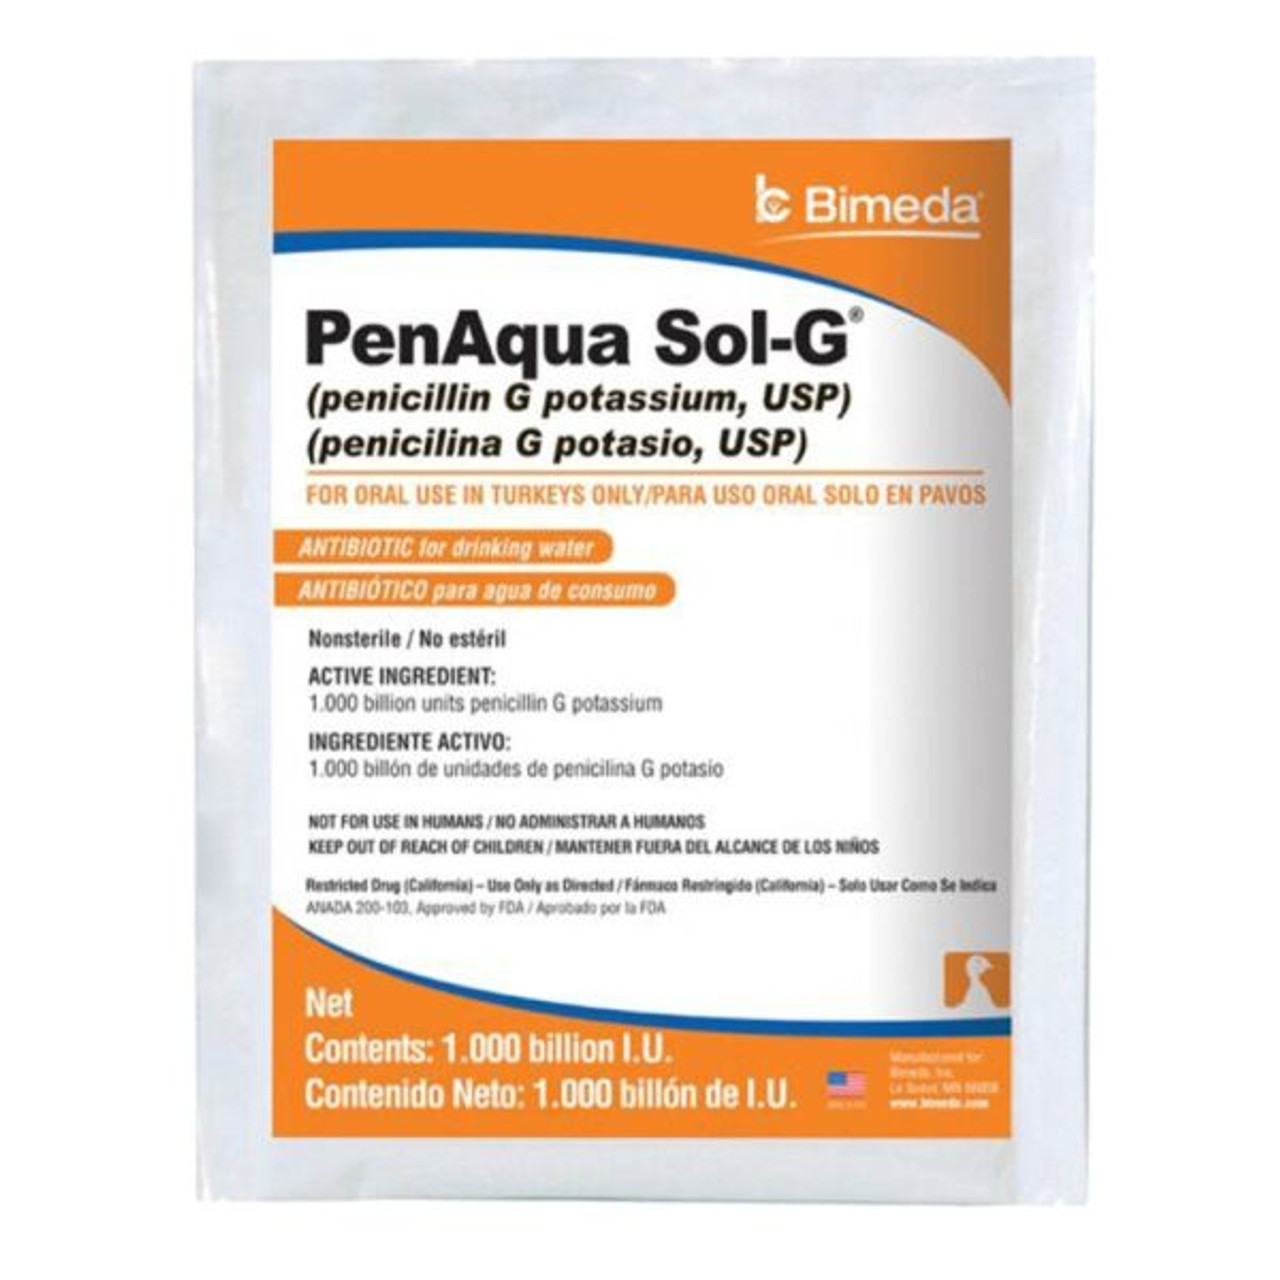 PenAqua Sol-G - Prescription Required 